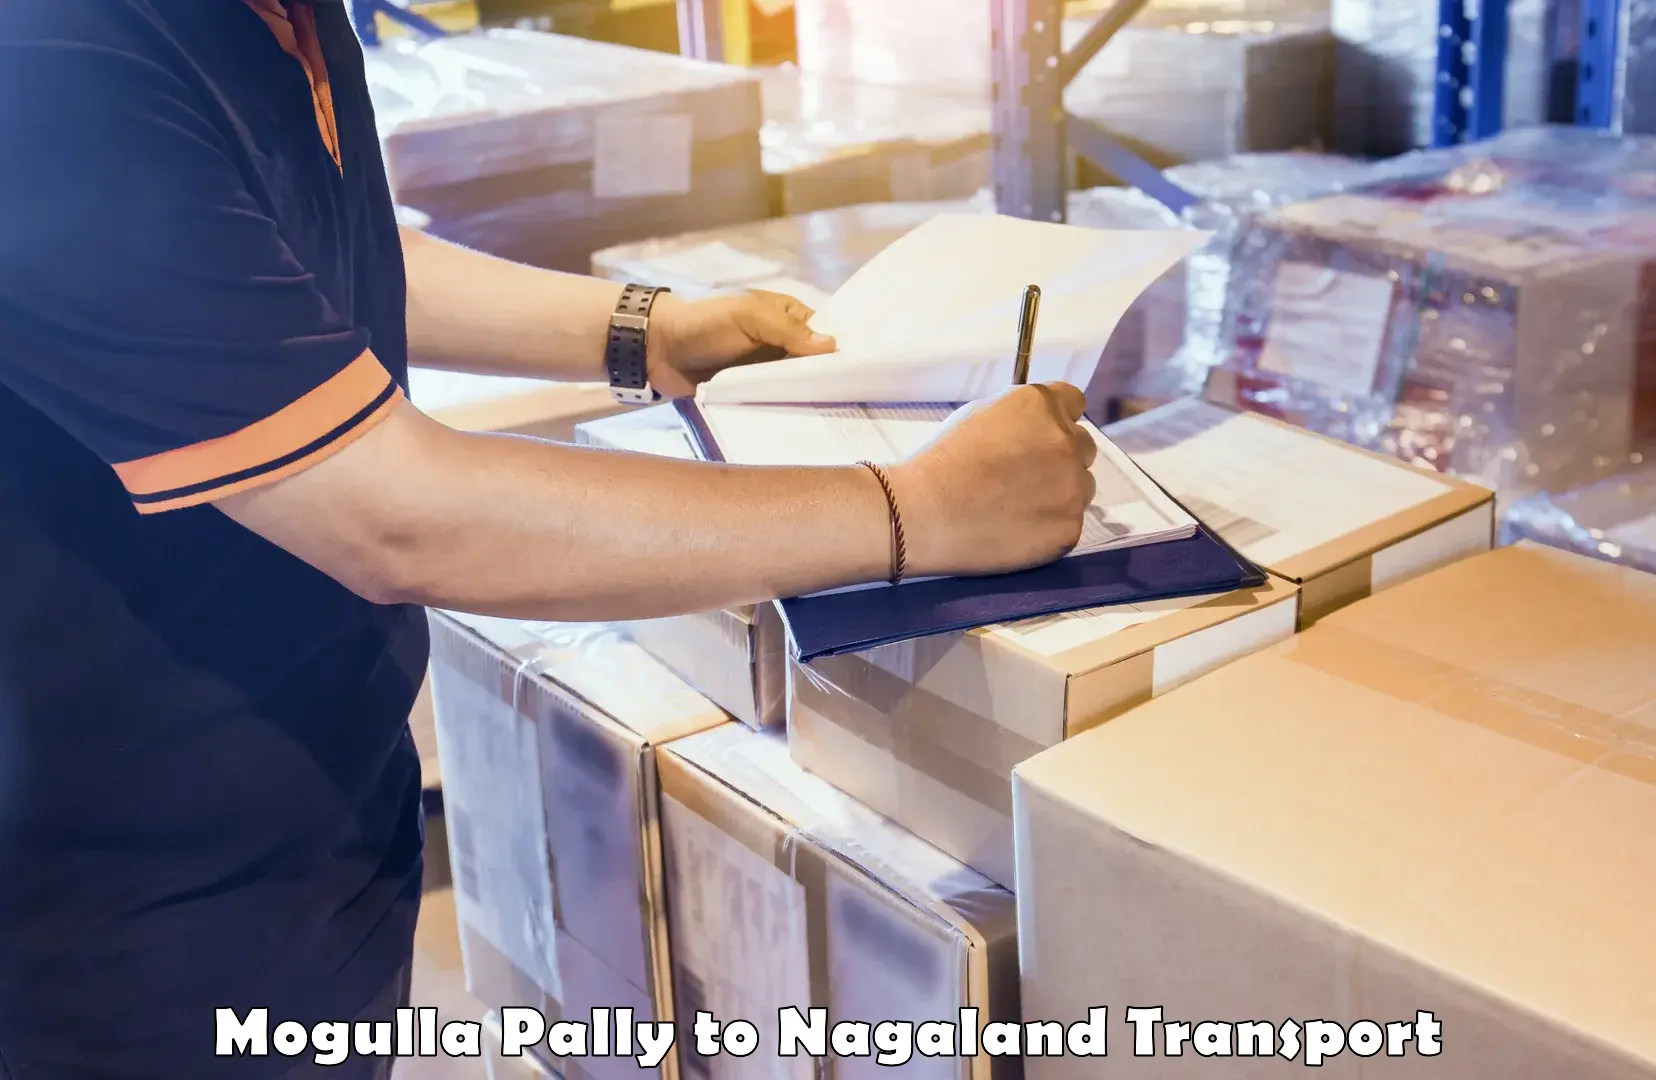 Daily parcel service transport Mogulla Pally to Mokokchung